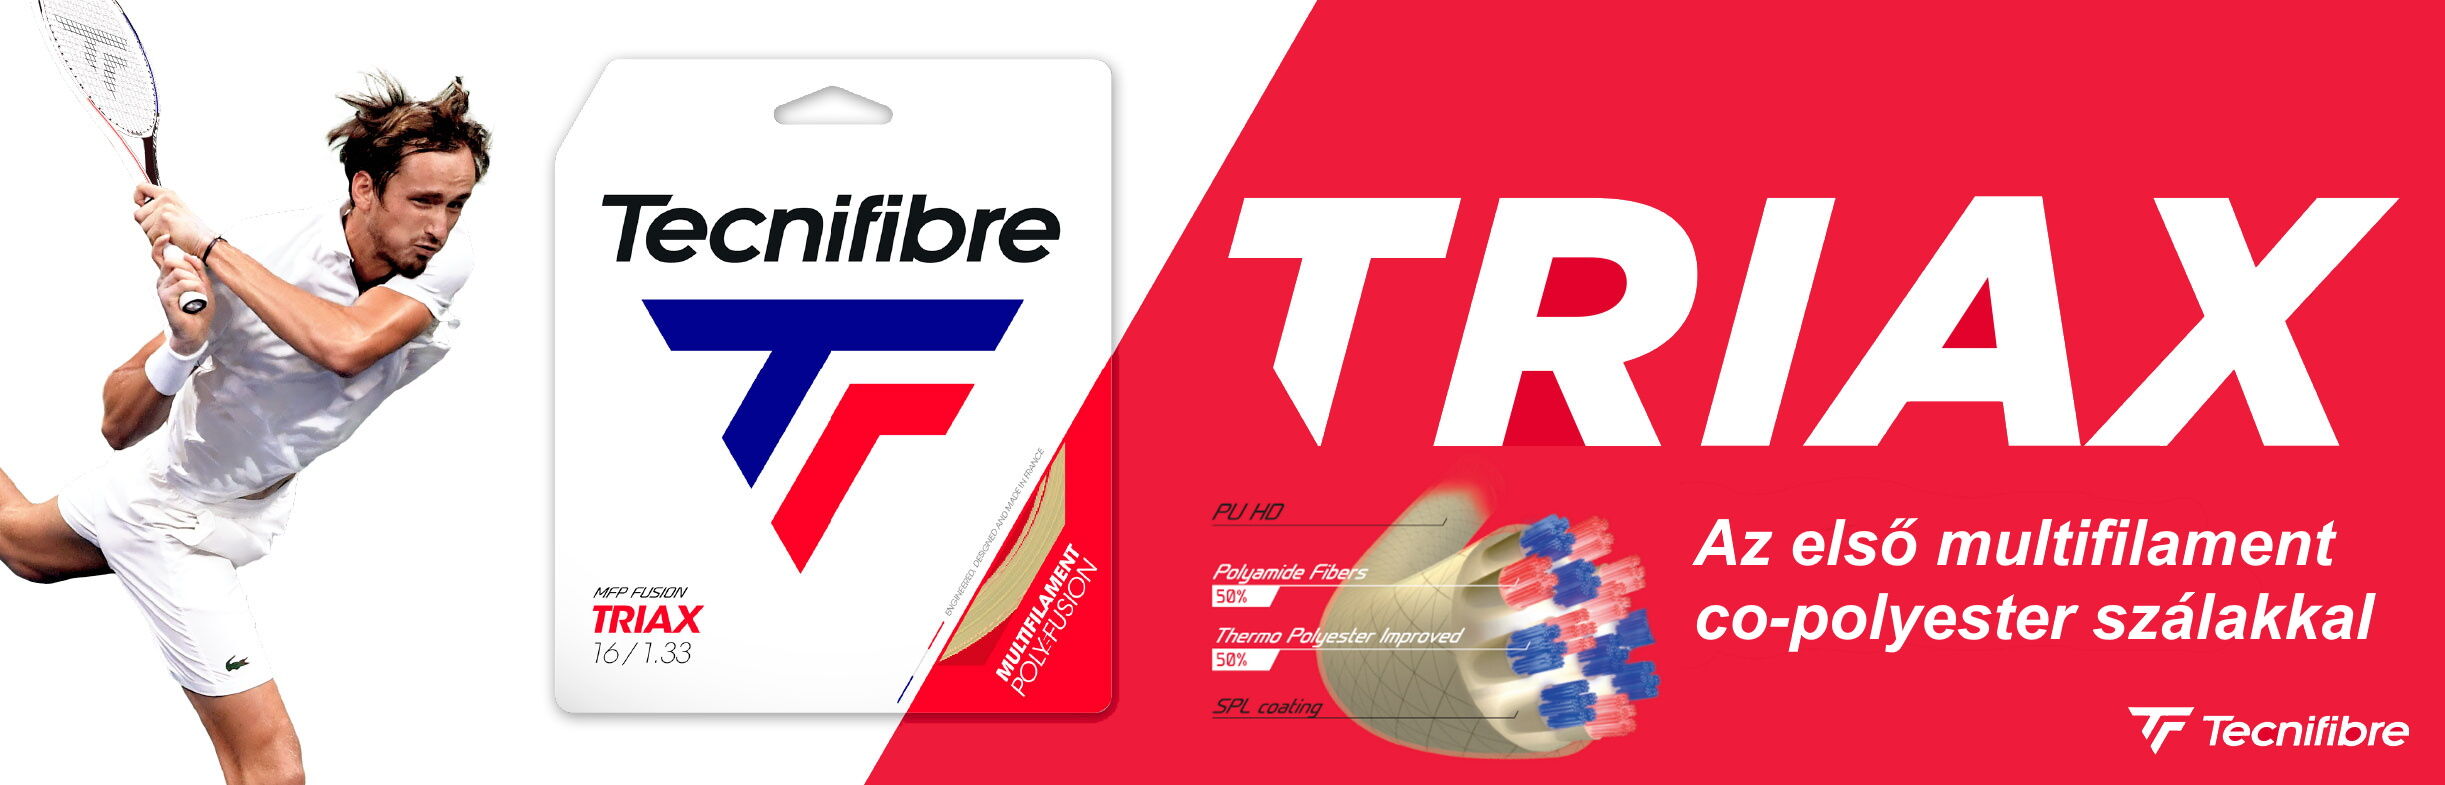 Tecnifibre Triax teniszhúr - az első multifilament co-polyester szálakkal